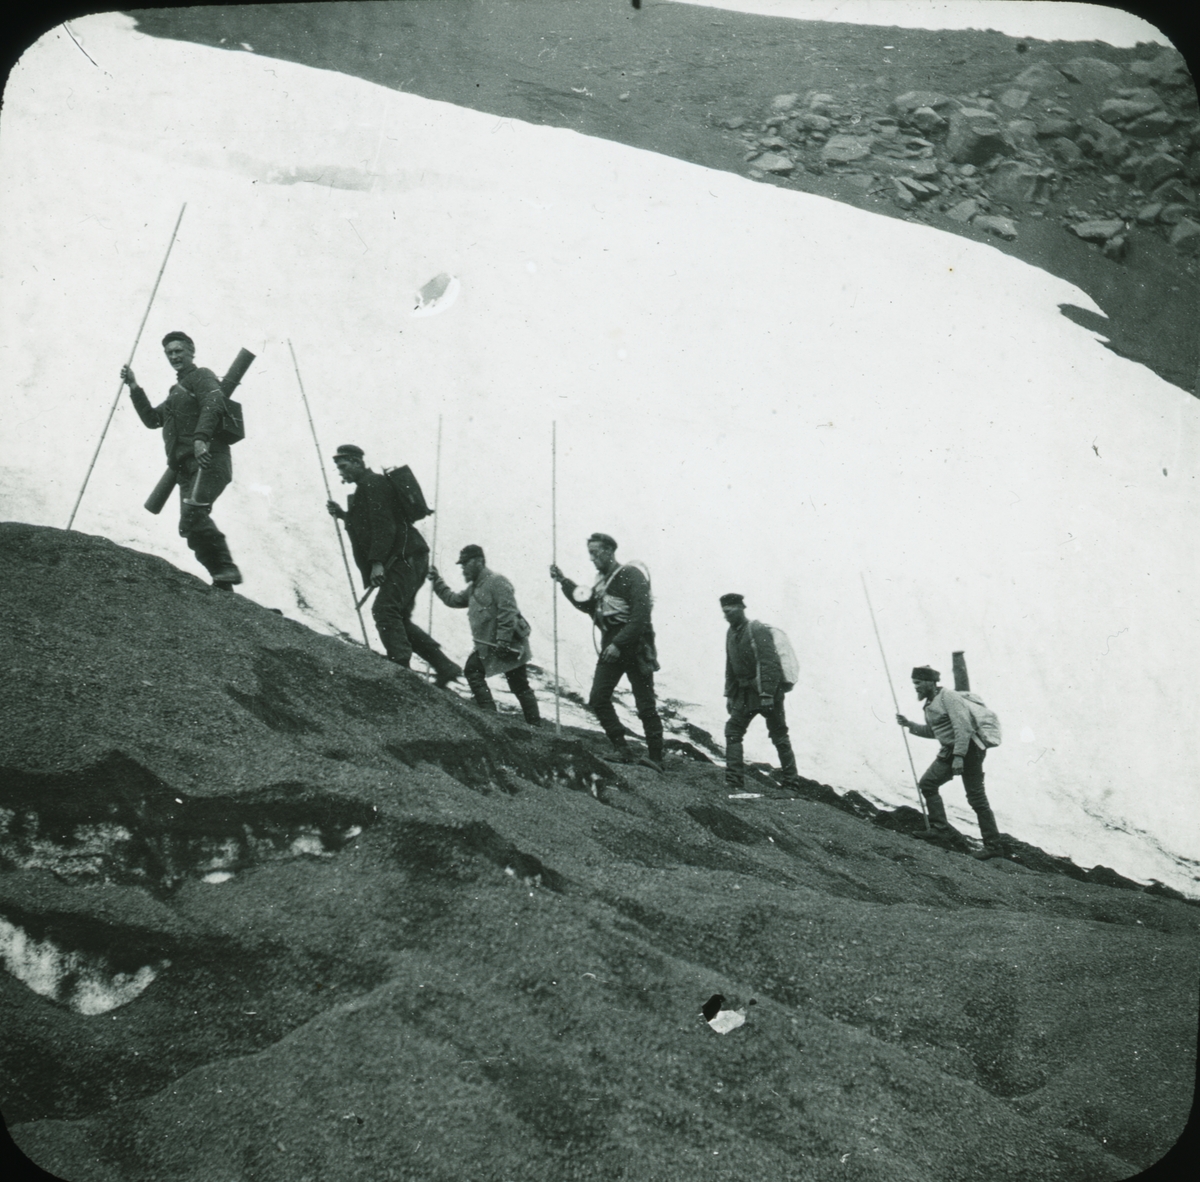 Fotografi från expedition till Spetsbergen. Motiv av sex expeditionsdeltagare som vandrar i berg.